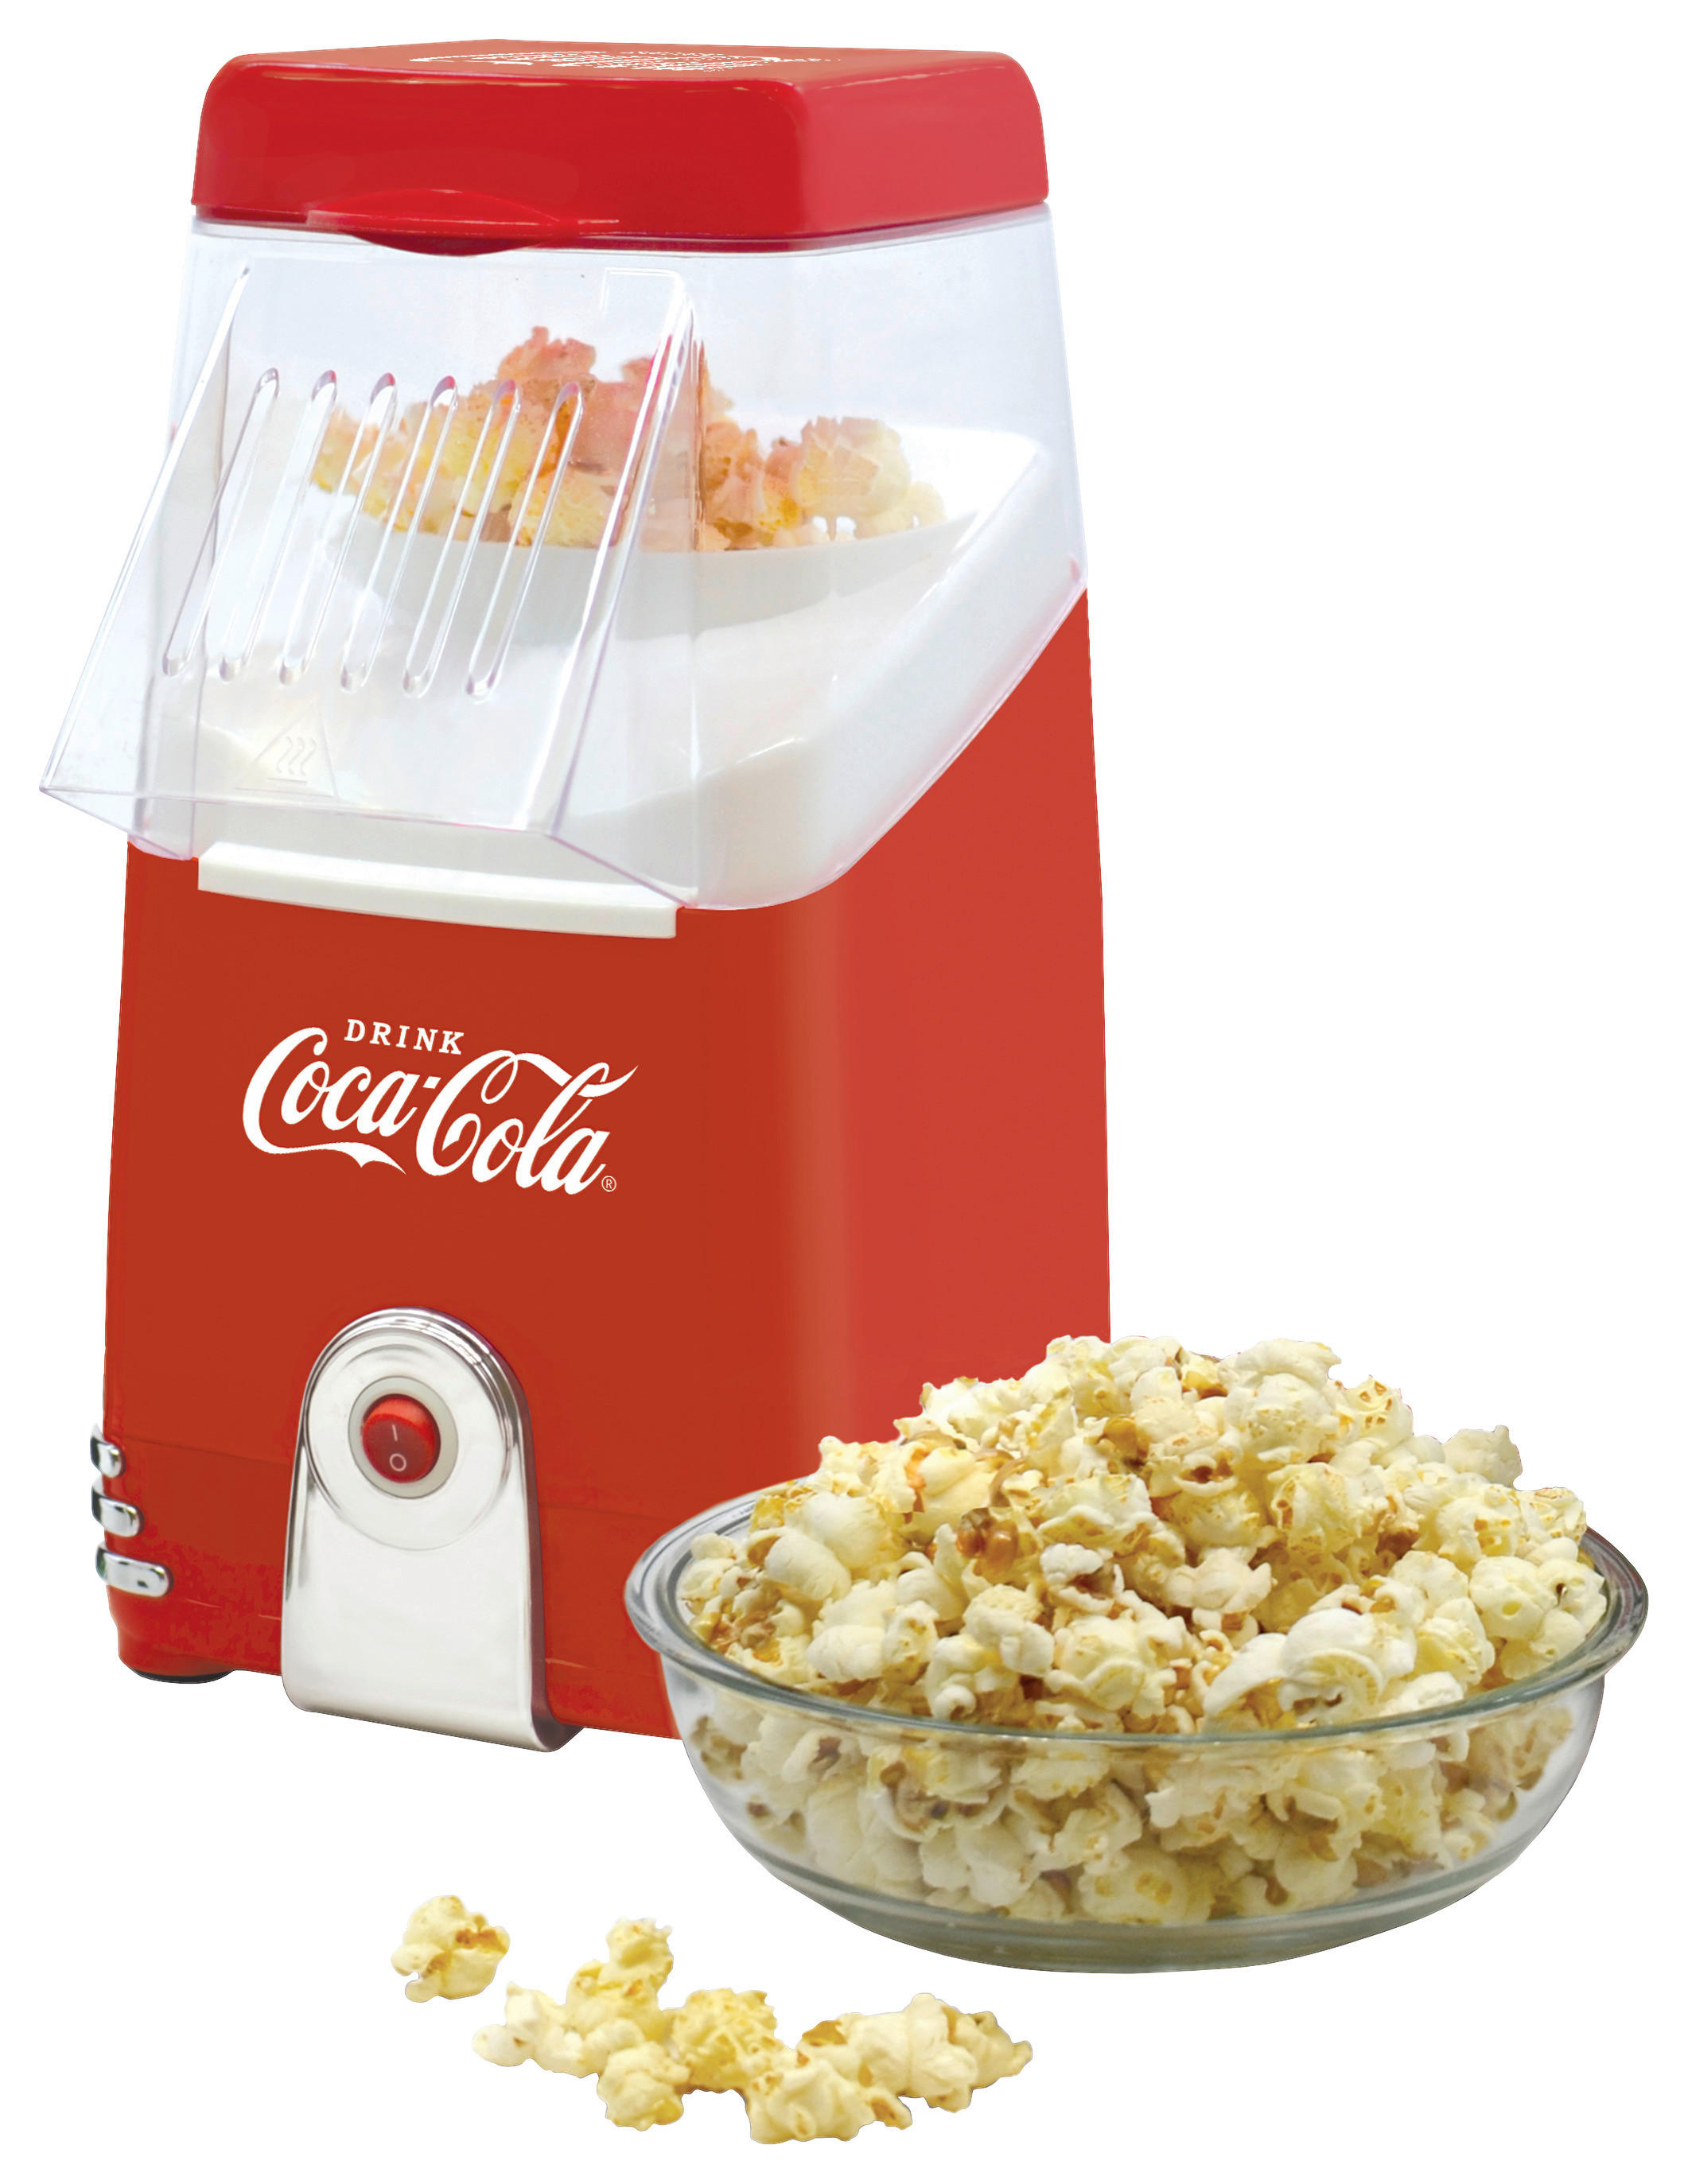 Heißluft-Popcornmaschine in Rot entdecken